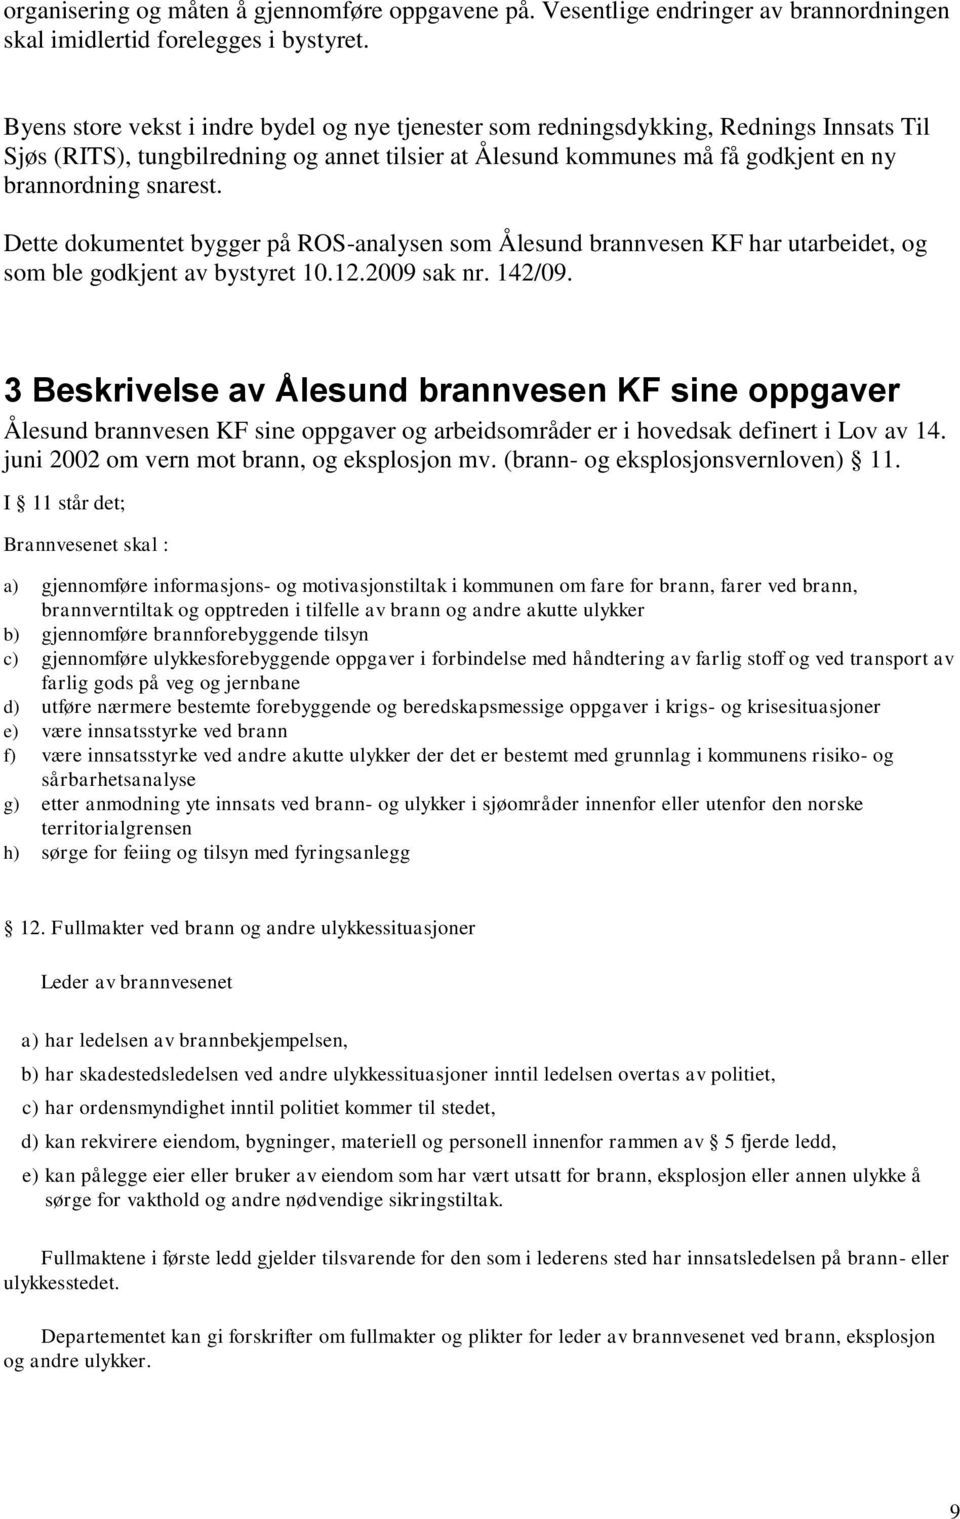 Dette dokumentet bygger på ROS-analysen som Ålesund brannvesen KF har utarbeidet, og som ble godkjent av bystyret 10.12.2009 sak nr. 142/09.